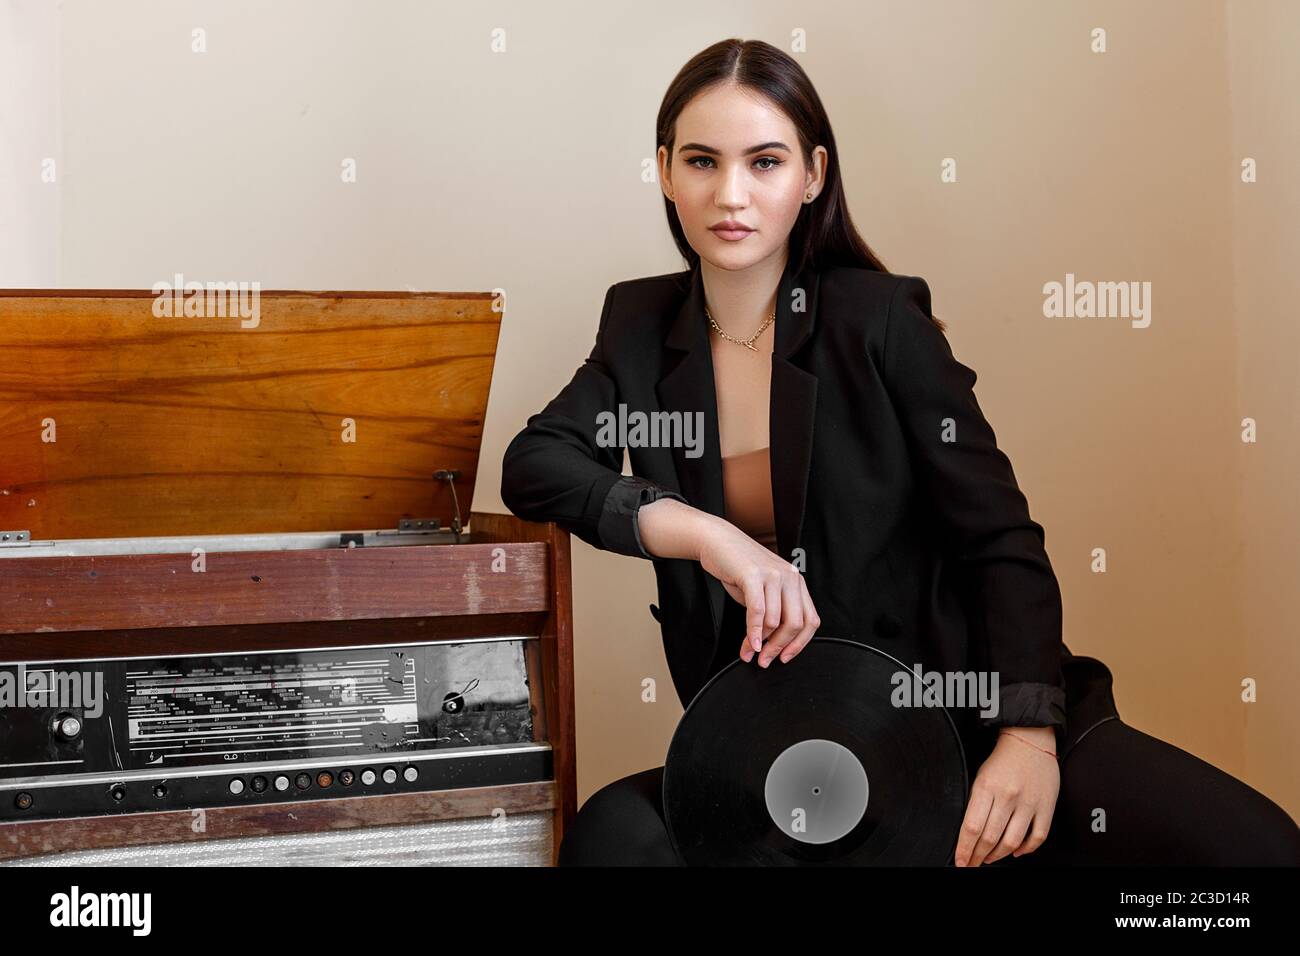 Una hermosa mujer caucásica joven en un traje negro y sandalias negras posan junto a un jugador de discos de época con un gramófono Foto de stock